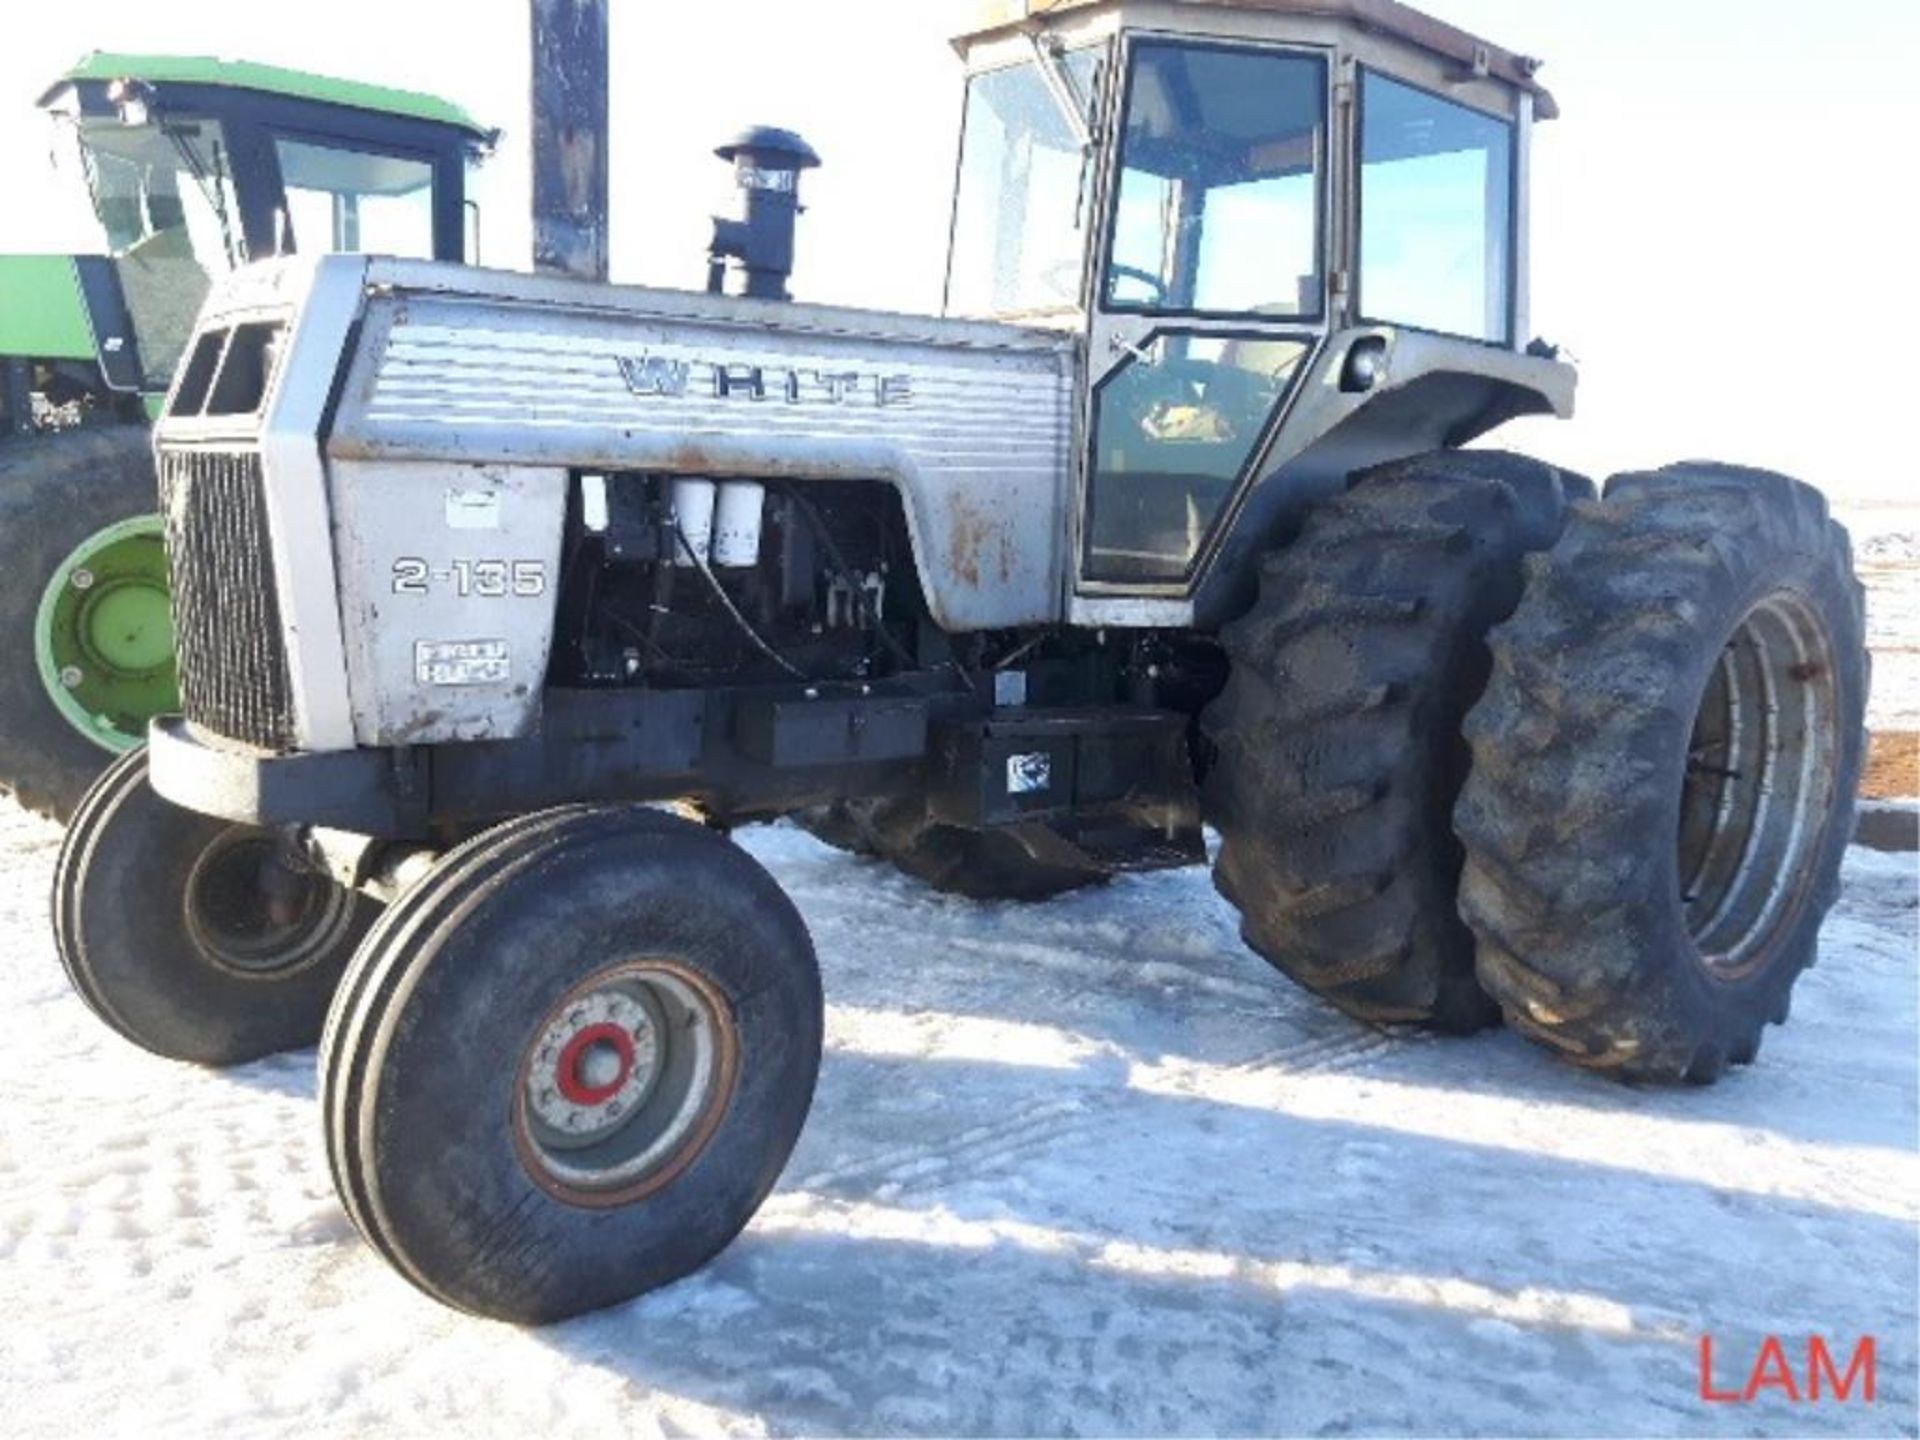 1978 2-135 White 2wd Tractor 5730 hr c/w Duals, 540/1000 pto